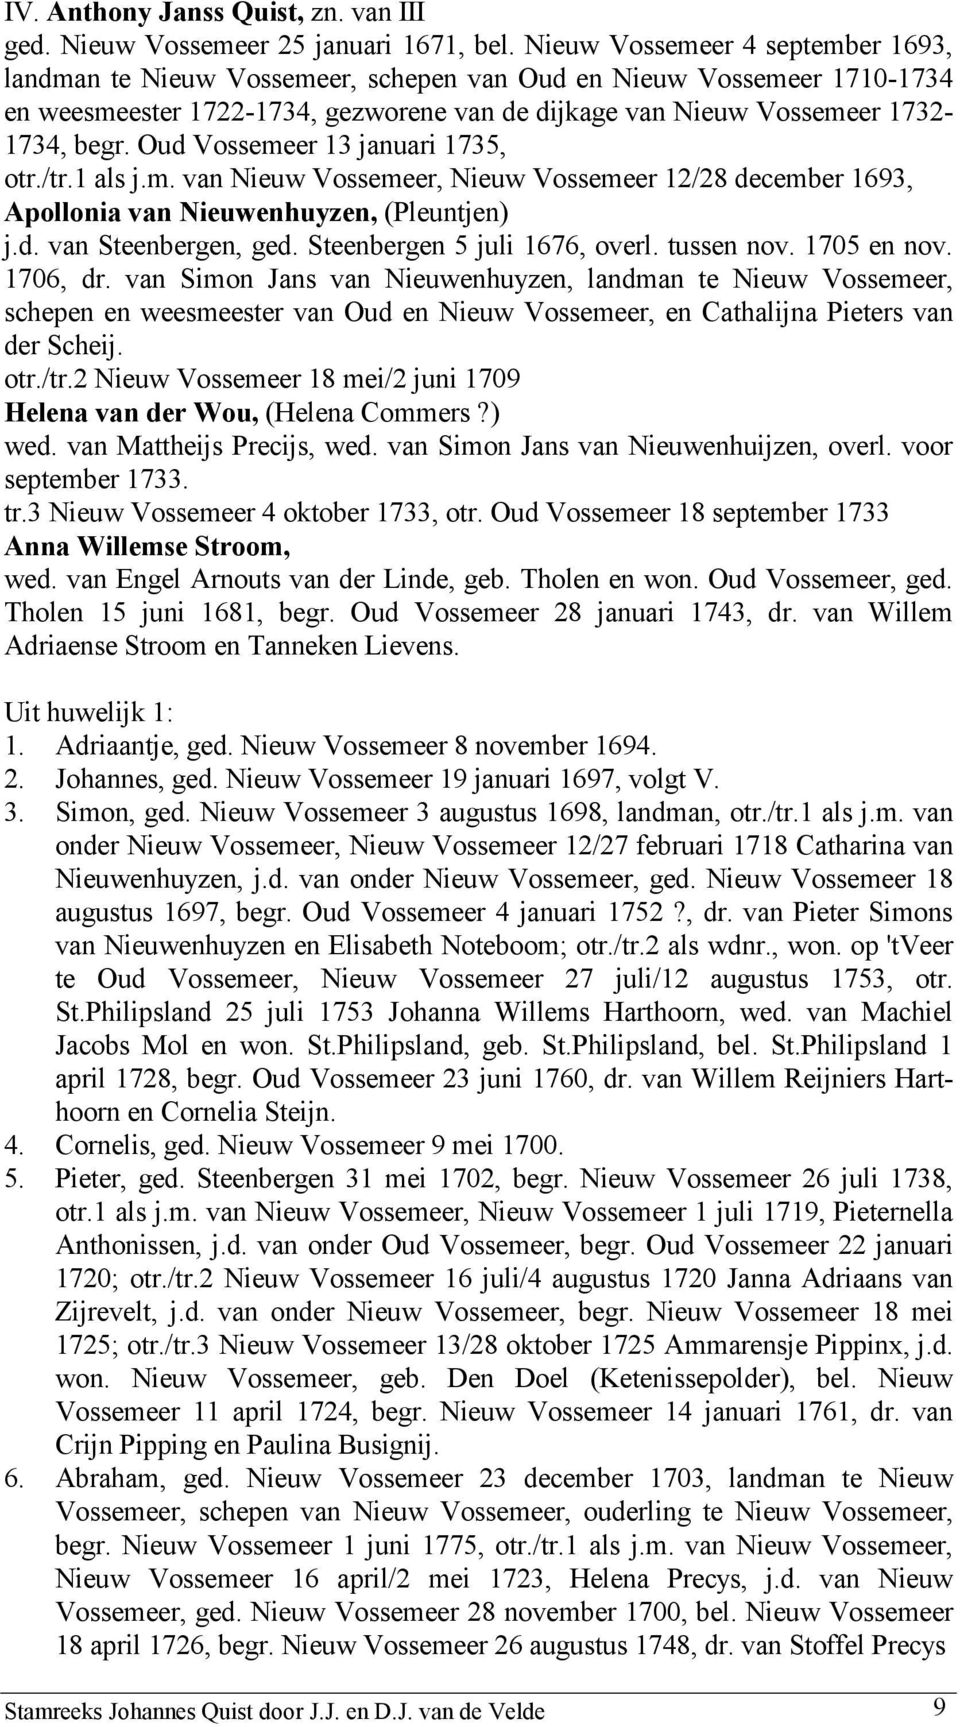 Oud Vossemeer 13 januari 1735, otr./tr.1 als j.m. van Nieuw Vossemeer, Nieuw Vossemeer 12/28 december 1693, Apollonia van Nieuwenhuyzen, (Pleuntjen) j.d. van Steenbergen, ged.